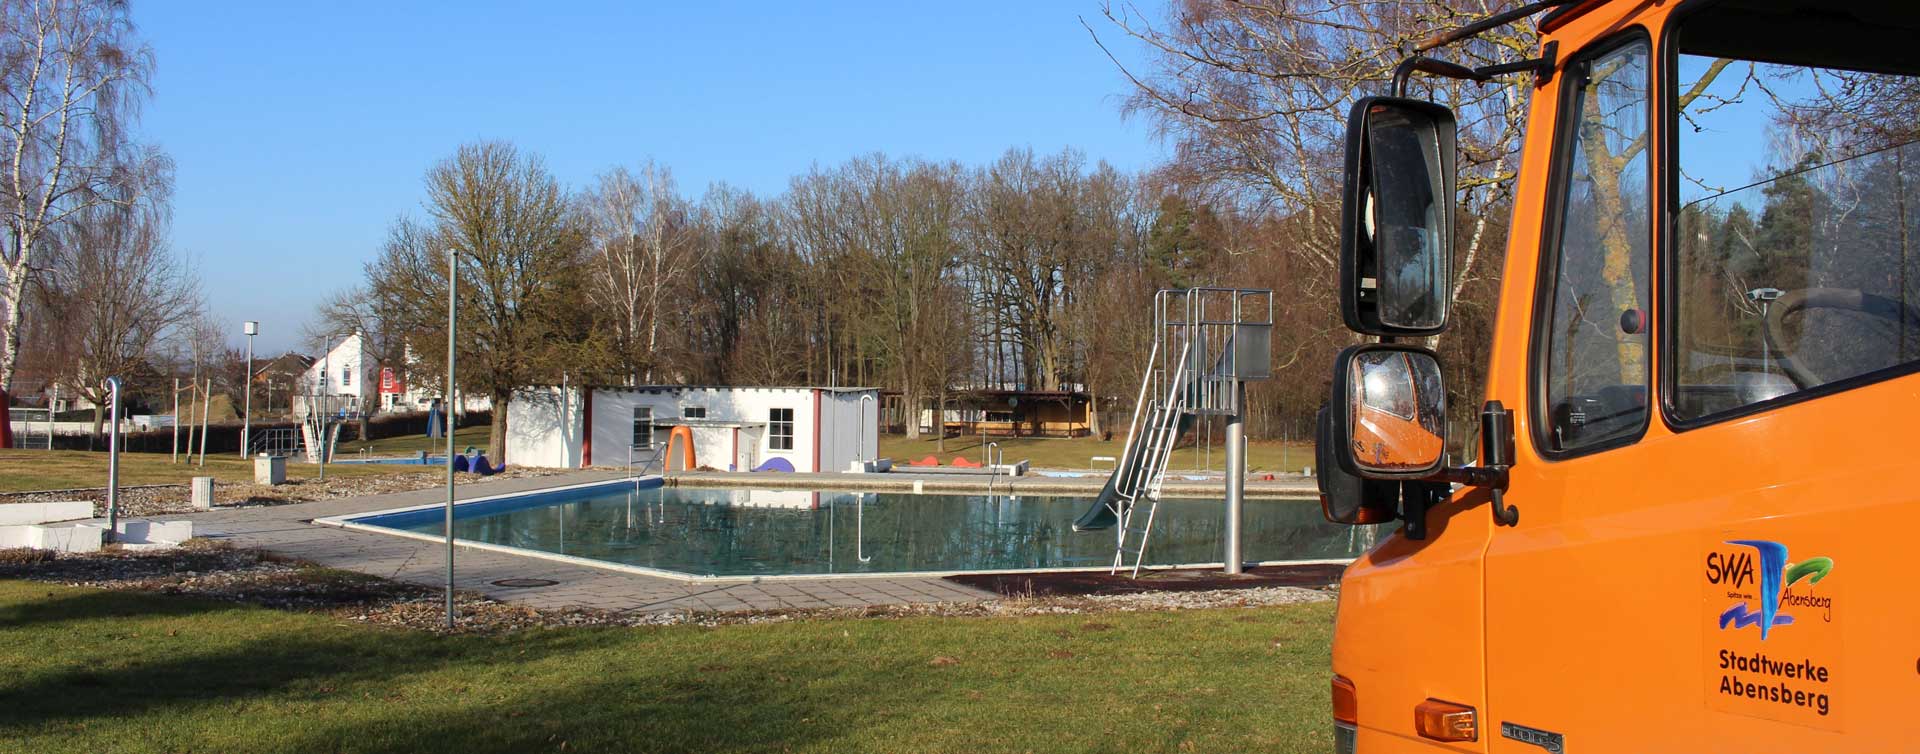 Das Freibad von Abensberg soll wieder, wenn auch mit starken Einschränkungen für die Besucher, geöffnet werden. (Foto: Ingo Knott/Stadt Abensberg)